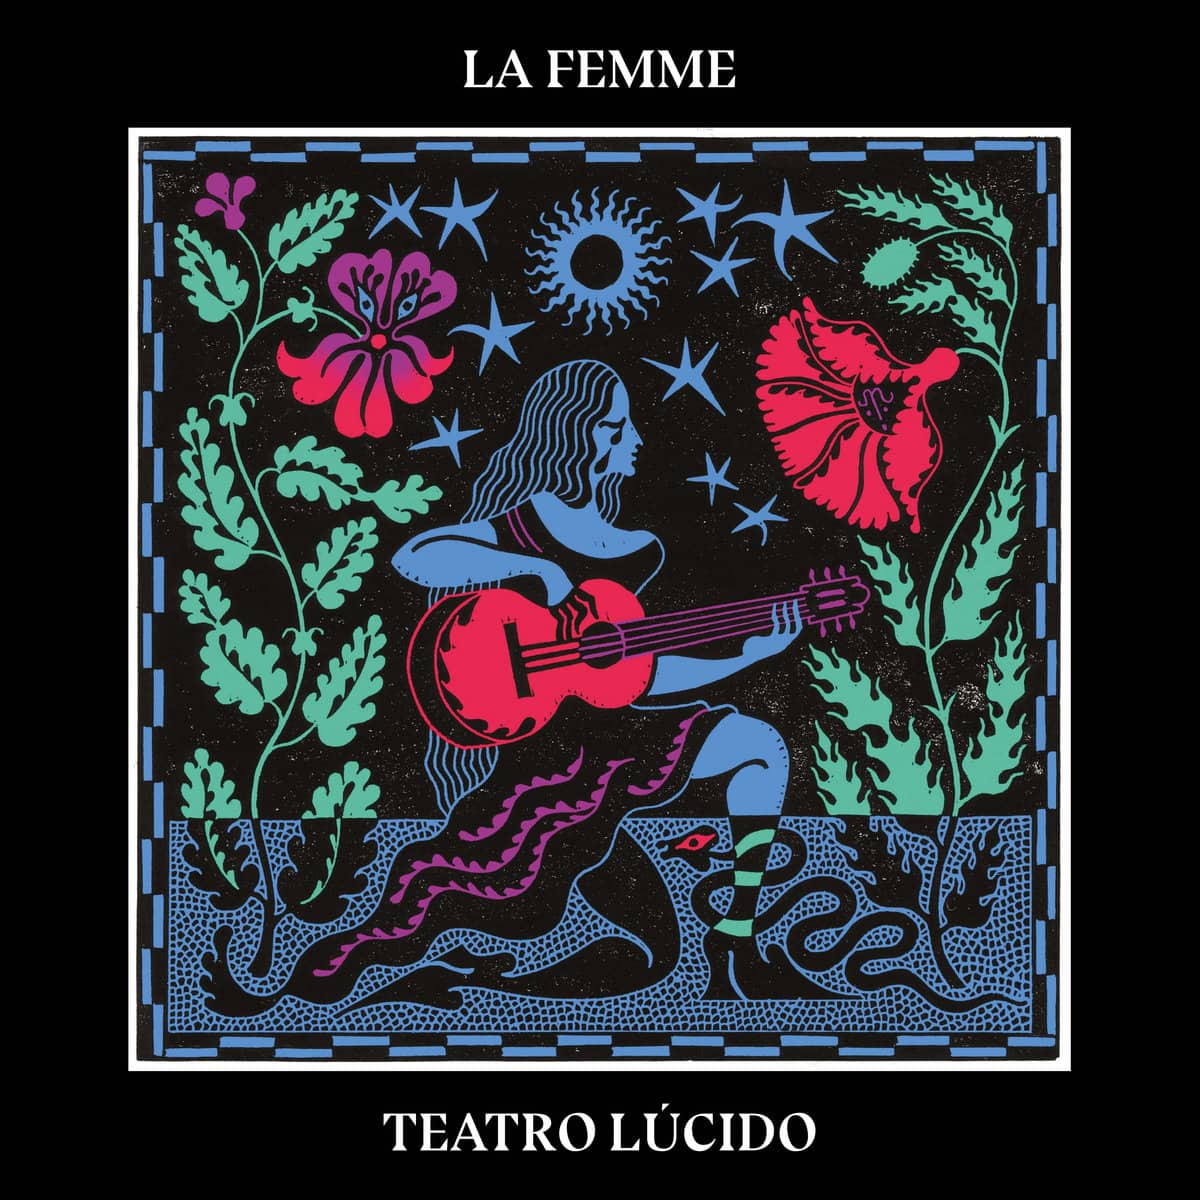 La Femme: Teatro Lucido (Vinyl LP)